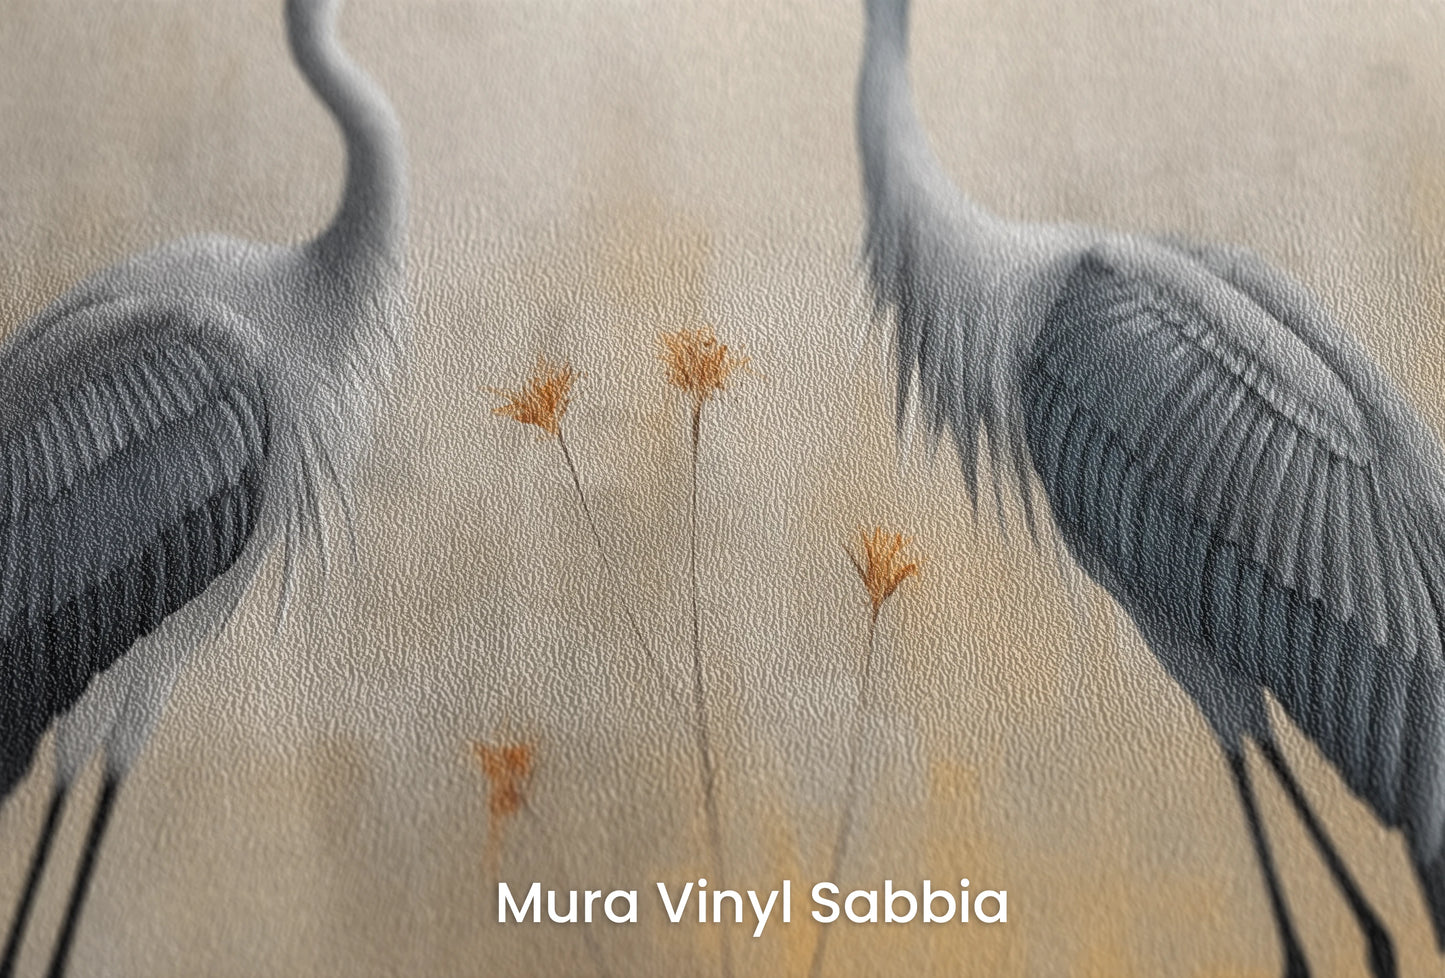 Zbliżenie na artystyczną fototapetę o nazwie Mystic Dance na podłożu Mura Vinyl Sabbia struktura grubego ziarna piasku.